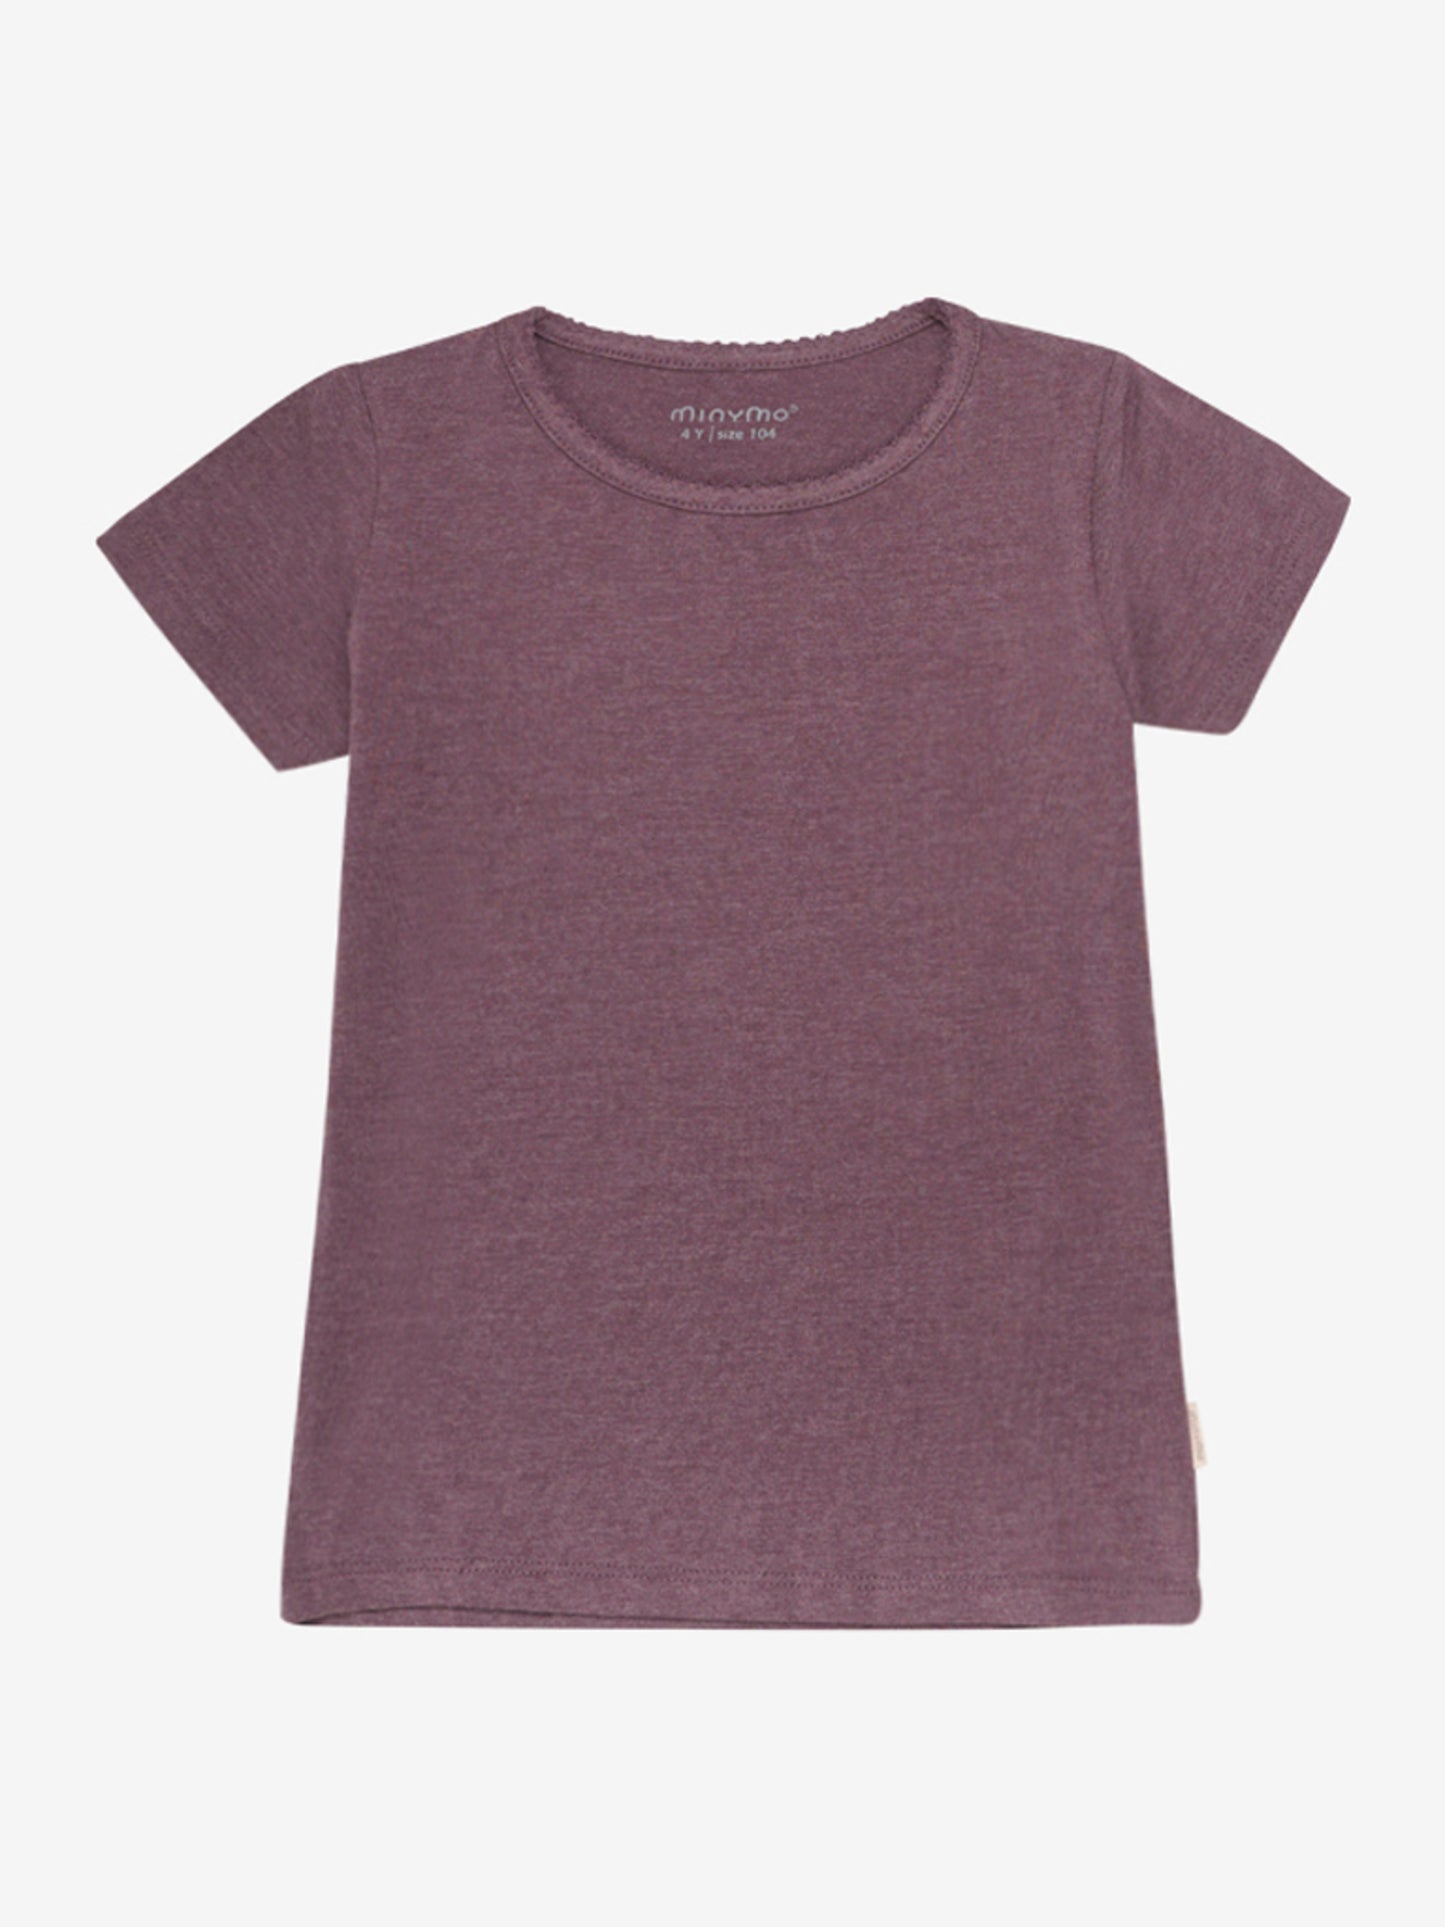 Anschmiegsames T-Shirt Zackenborde Baumwolle 3 Farben